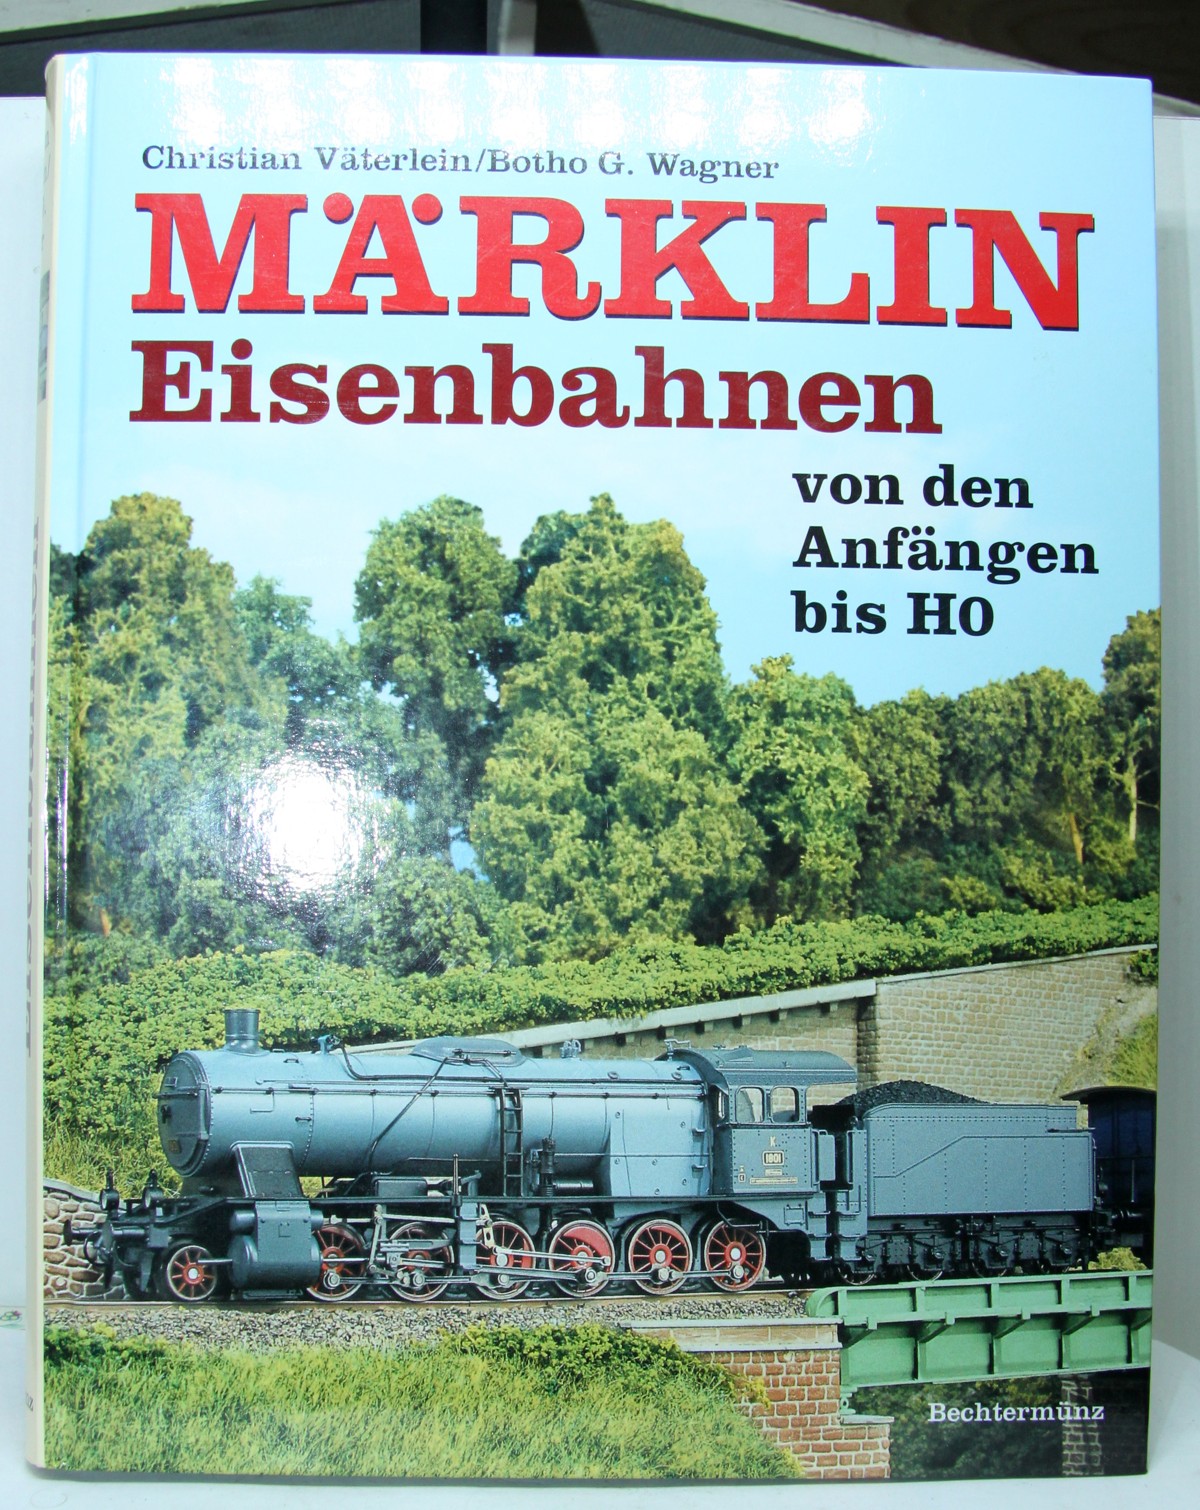 Buch 103, Autoren: Christian Väterlein, Botho G. Wagner, Titel: Märklin Eisenbahnen – von den Anfängen bis H0,